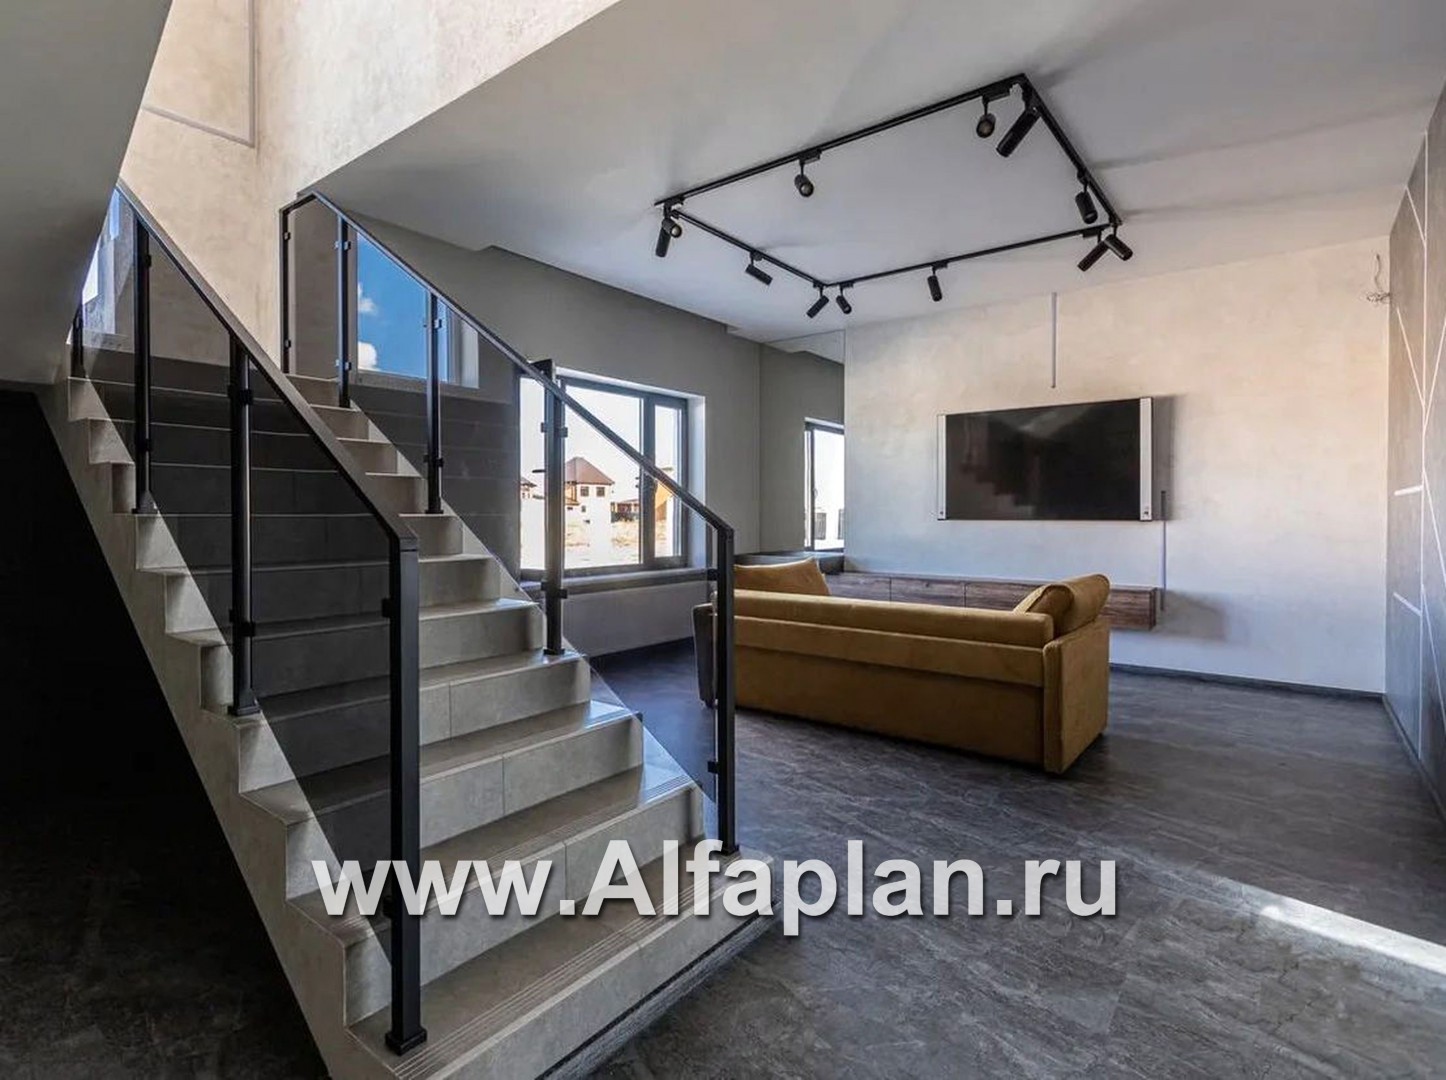 Проекты домов Альфаплан - «Дипломат Плюс» - дом с бильярдной и гаражом на два автомобиля - дополнительное изображение №5